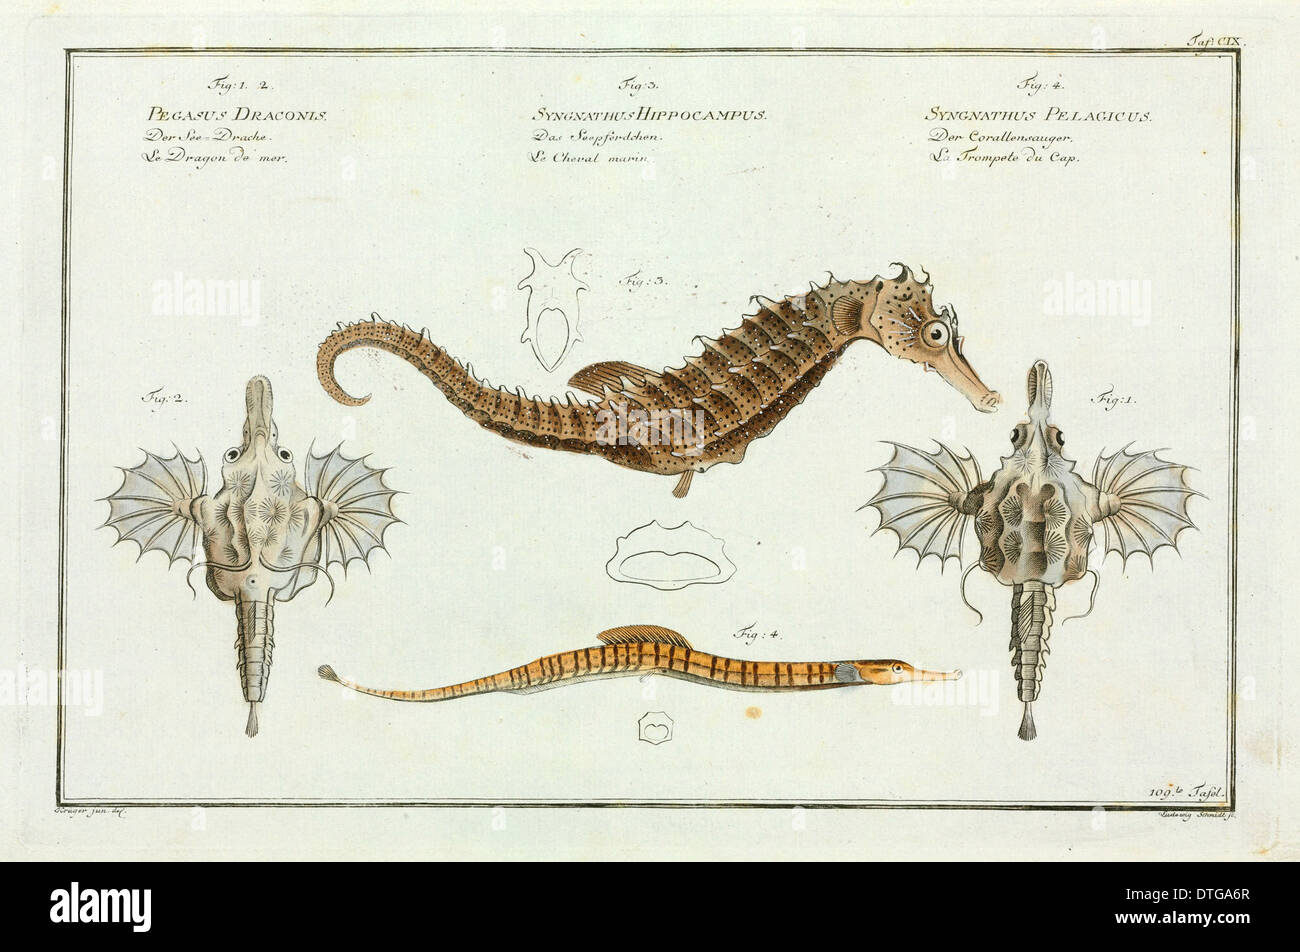 Pegasus draconis, Syngnathus hippocampus [Hippocampus hippocampus], Syngnathus pelagicus Stock Photo